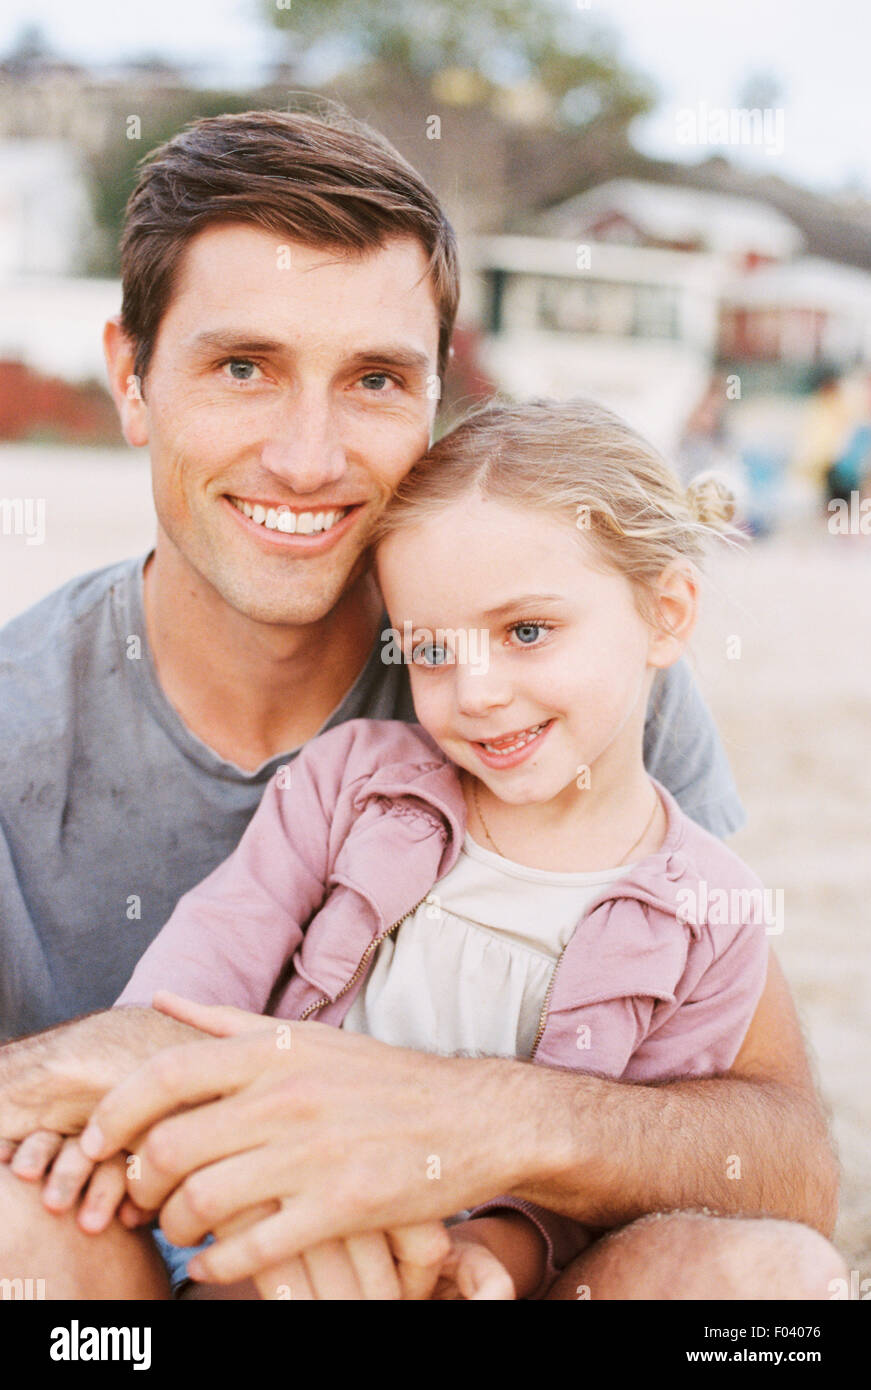 Jeune fille assise sur les genoux de son père, looking at camera, souriant. Banque D'Images